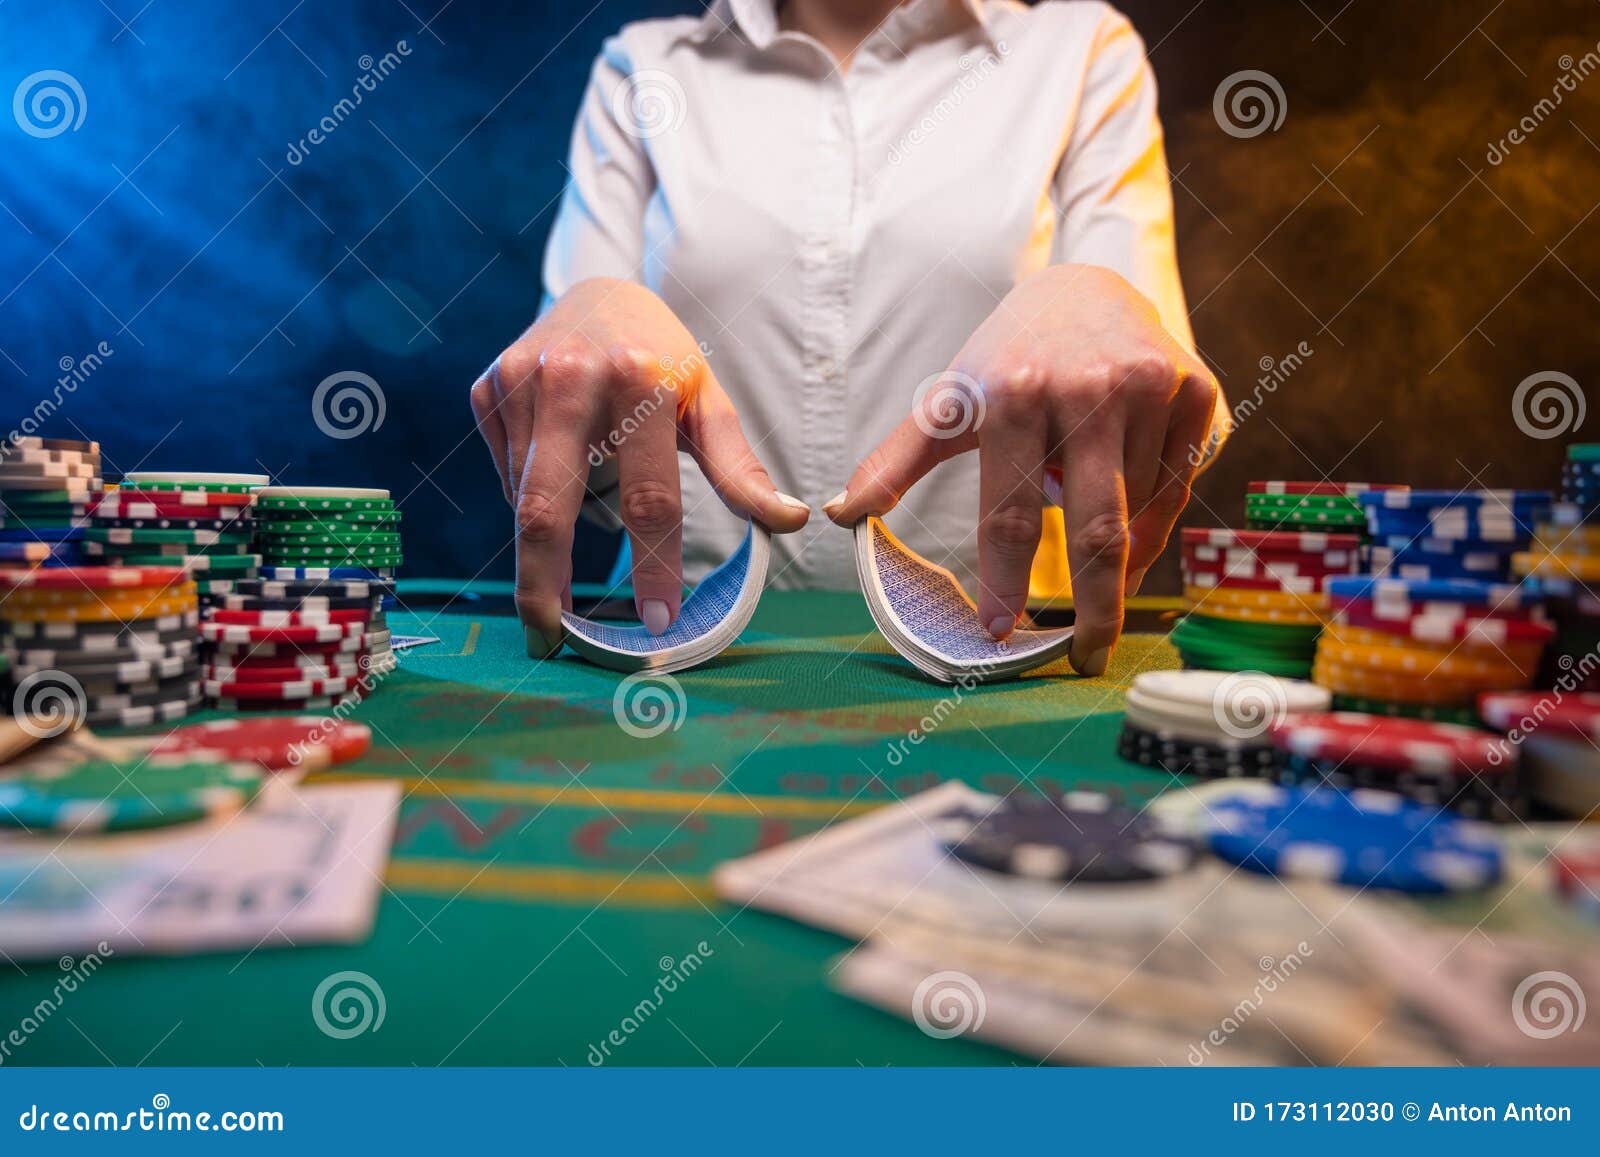 хранитель денег в казино